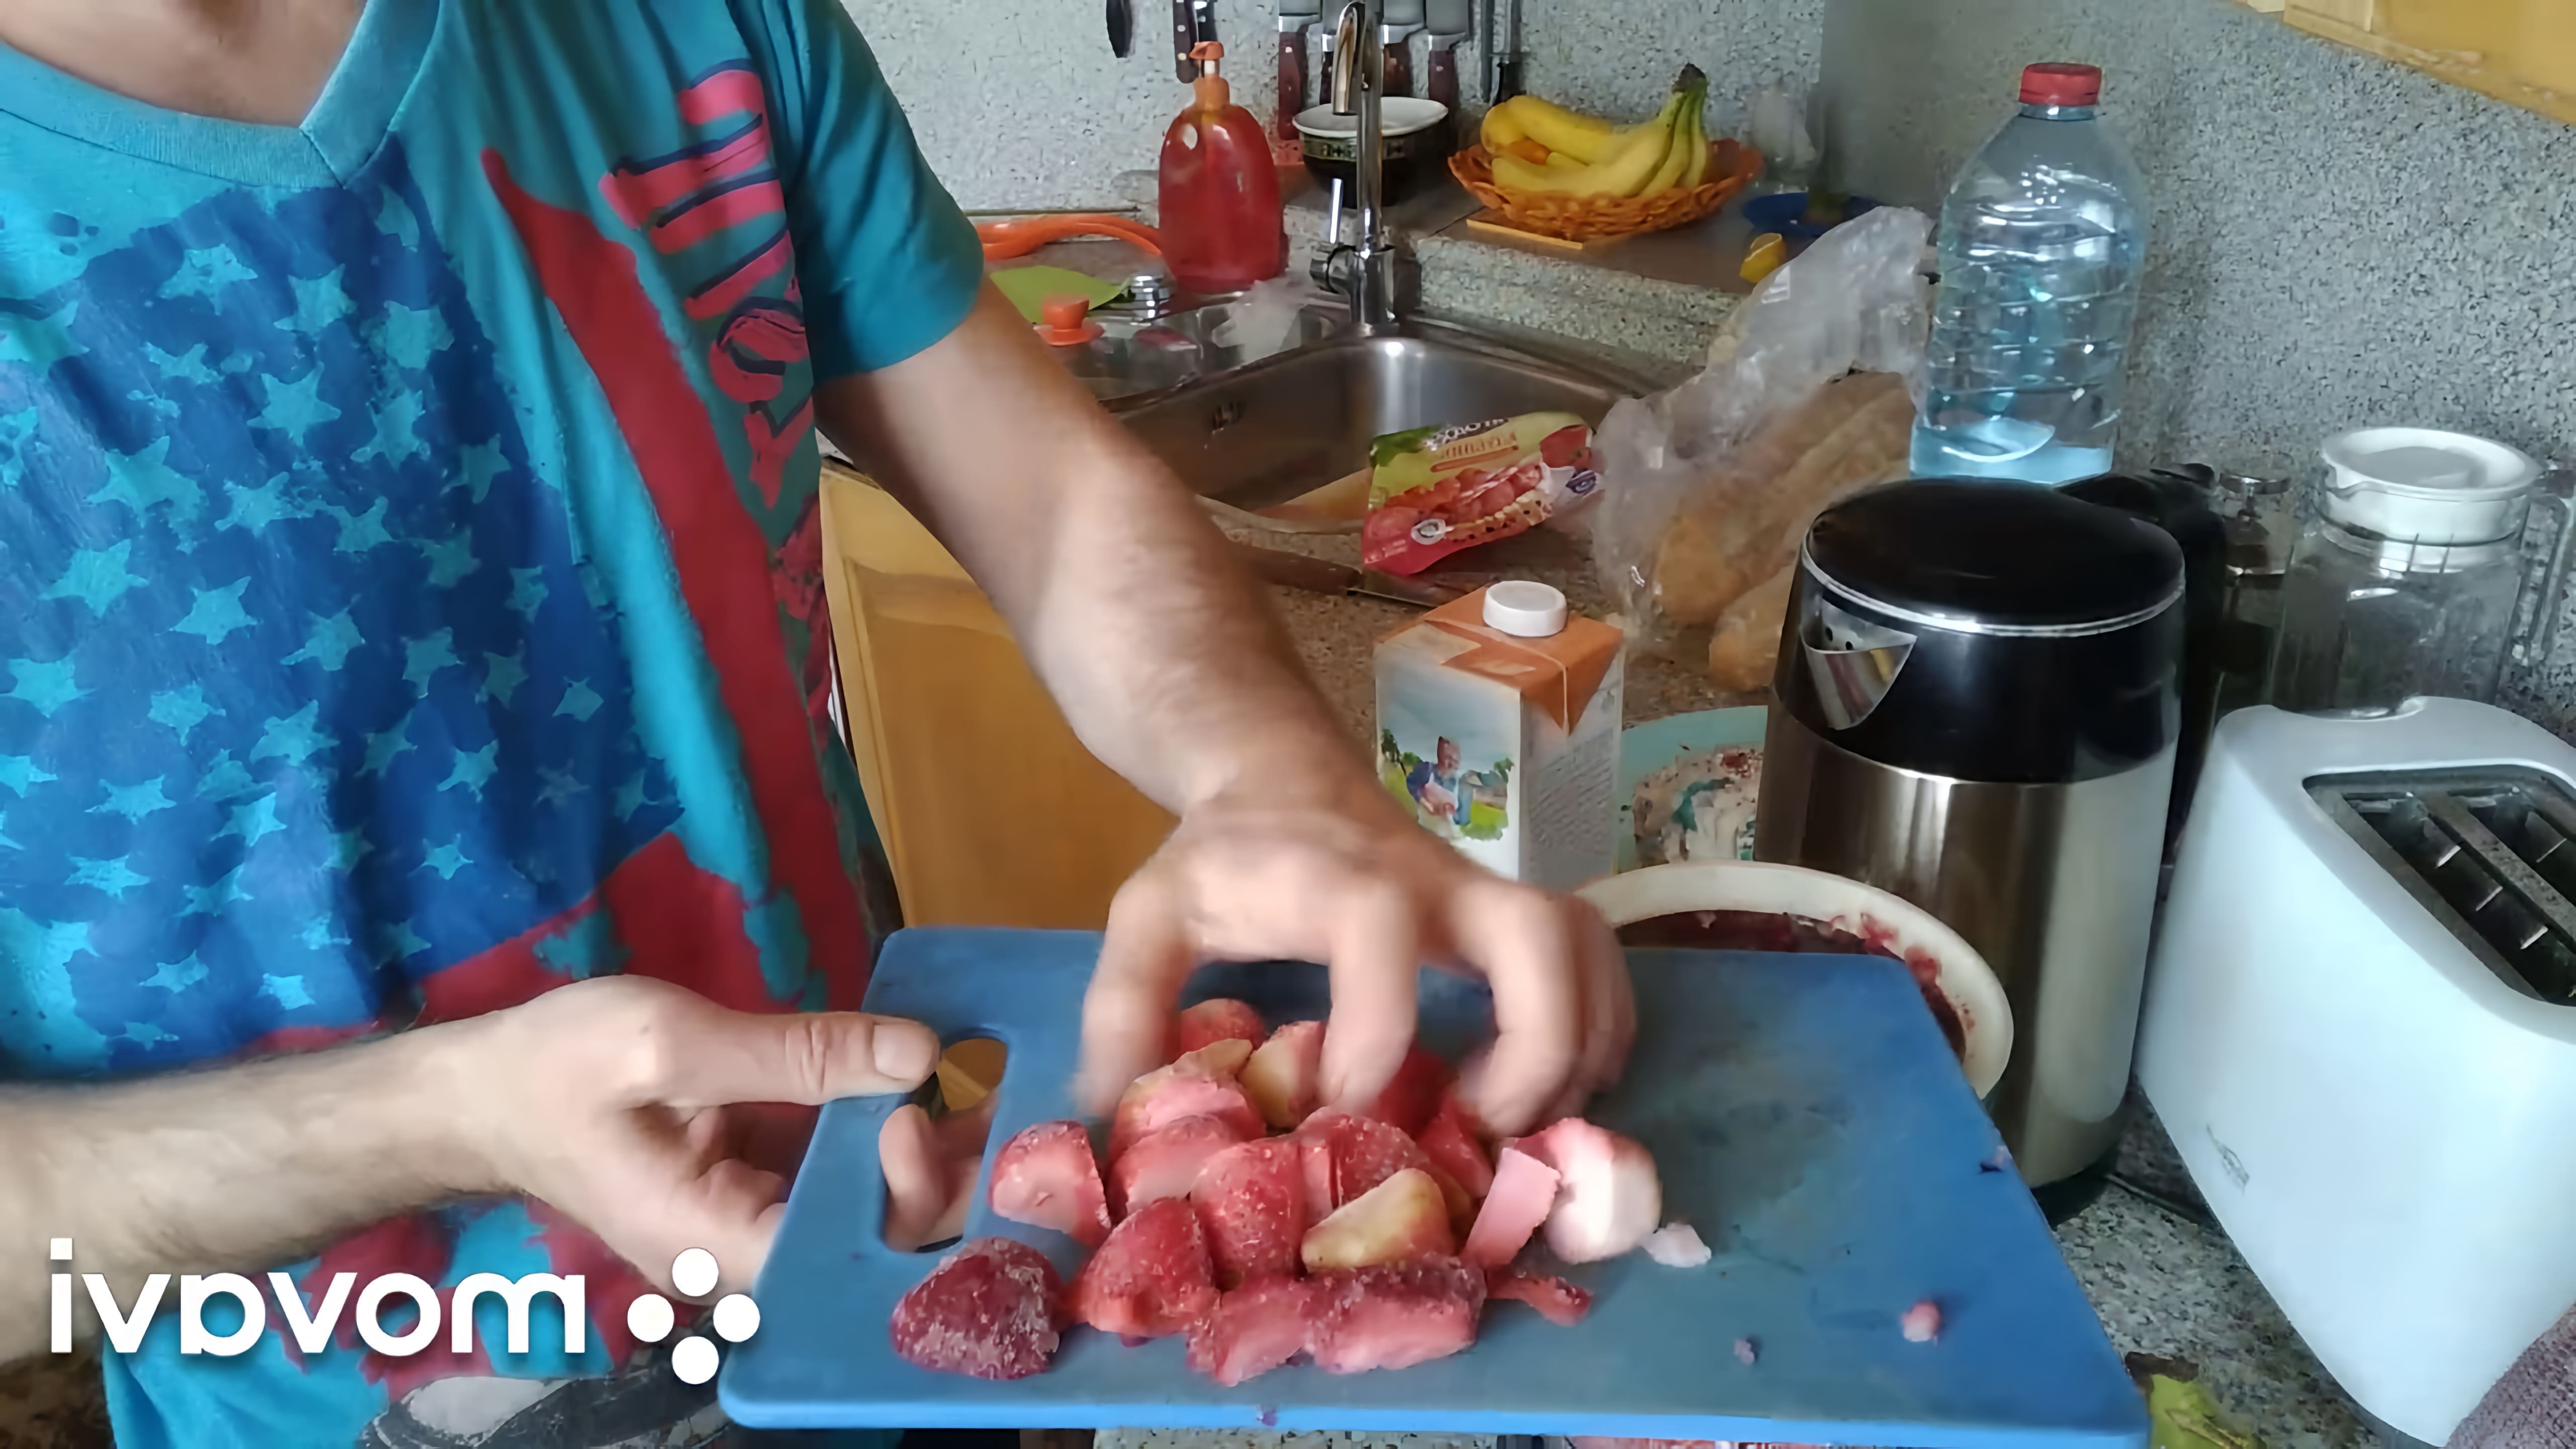 В этом видео демонстрируется процесс приготовления клубнично-бананового смузи с ряженкой